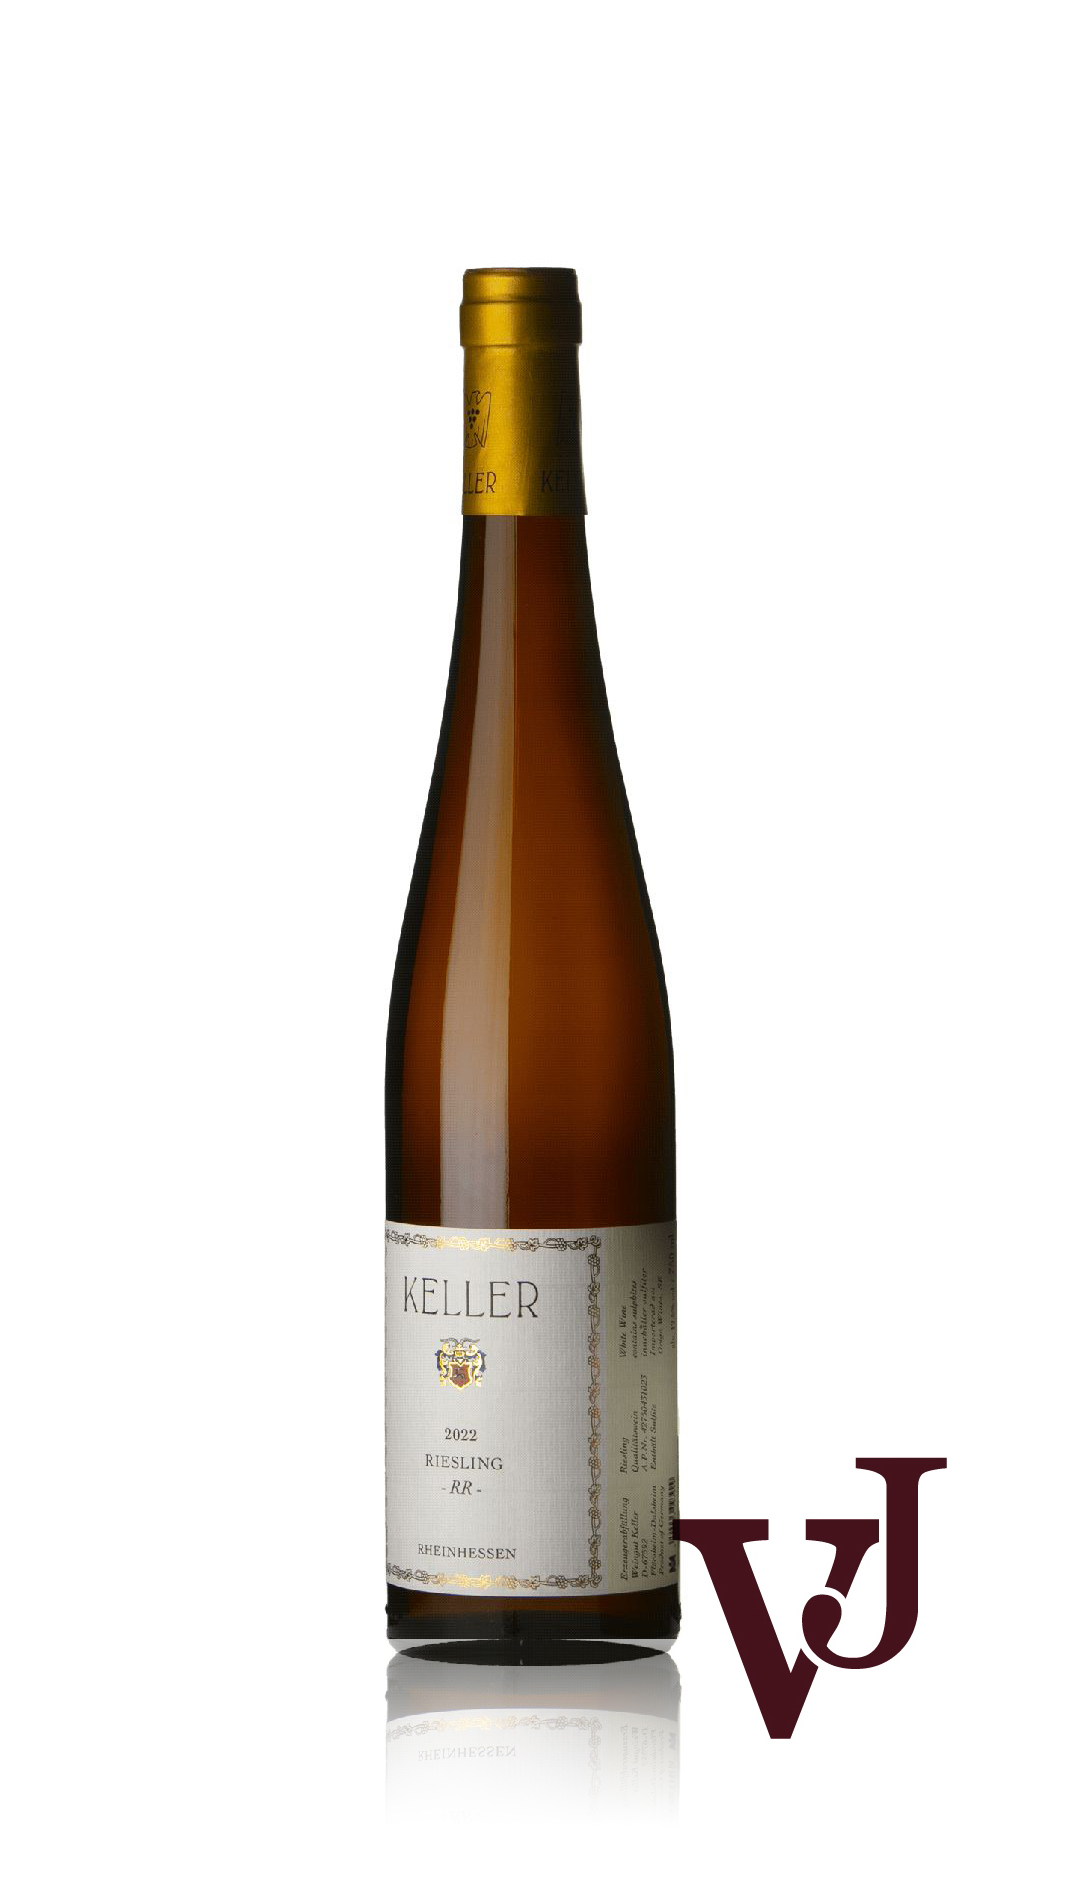 Vitt vin - Weingut Keller Riesling RR 2022 artikel nummer 9372001 från producenten Weingut Keller från Tyskland - Vinjournalen.se